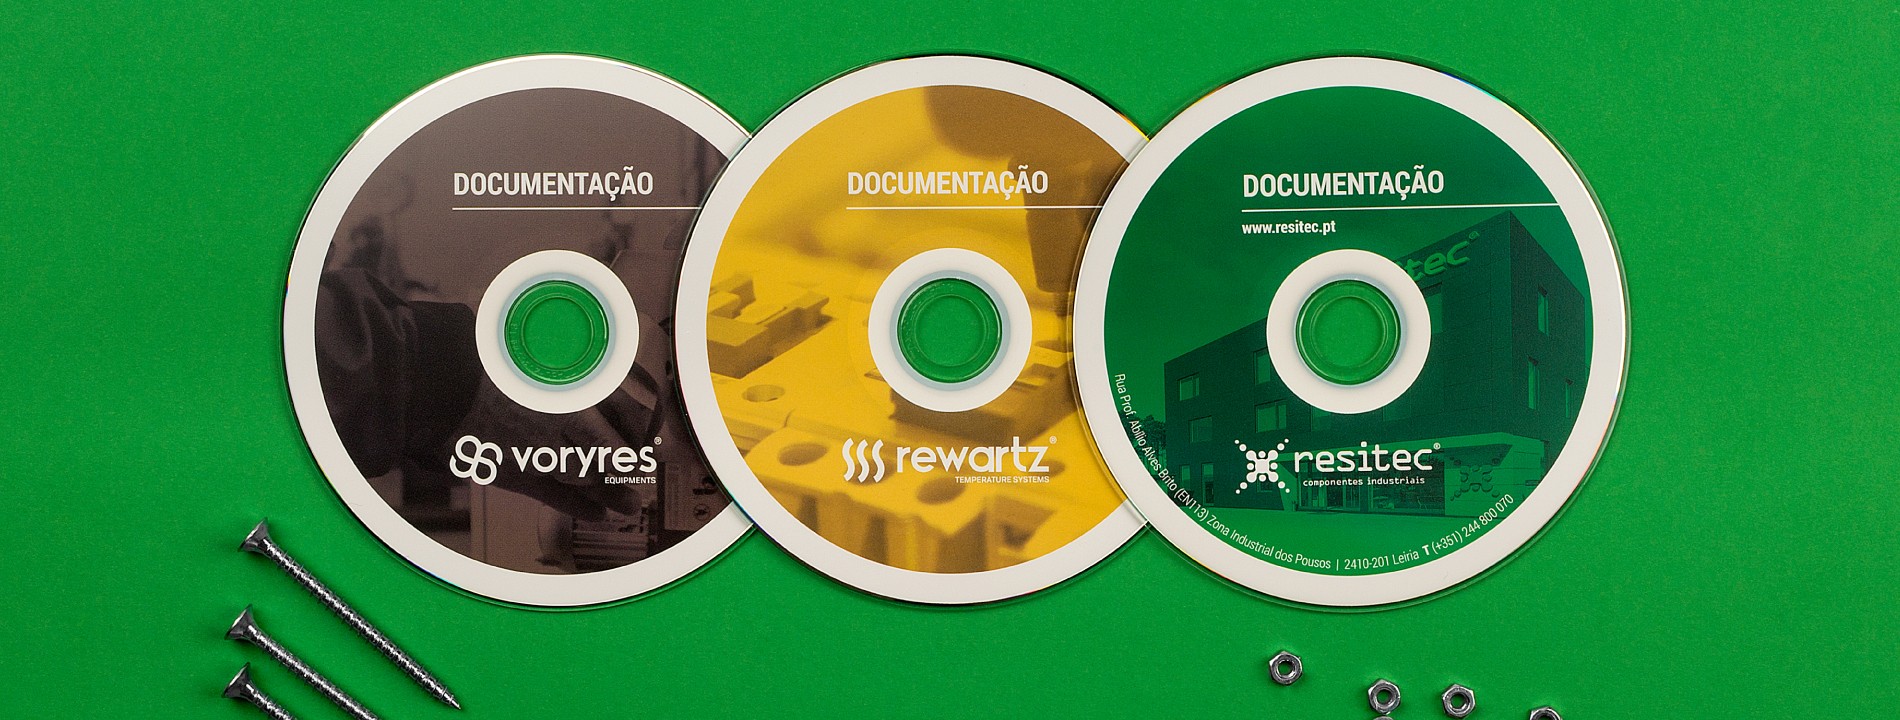 CD com documentação